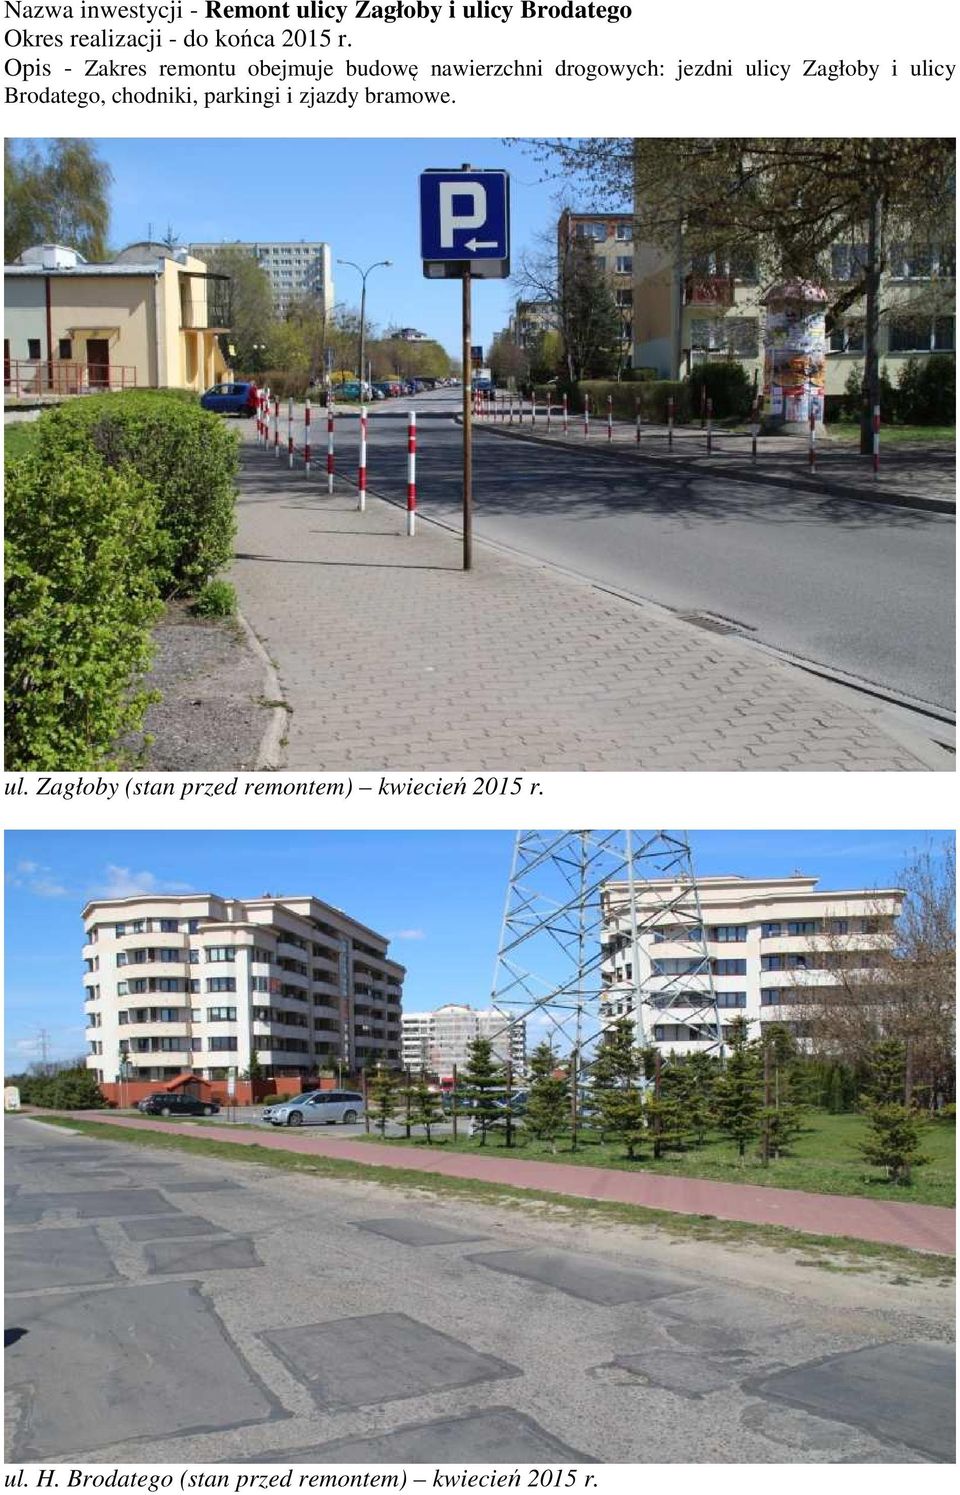 Opis - Zakres remontu obejmuje budowę nawierzchni drogowych: jezdni ulicy Zagłoby i